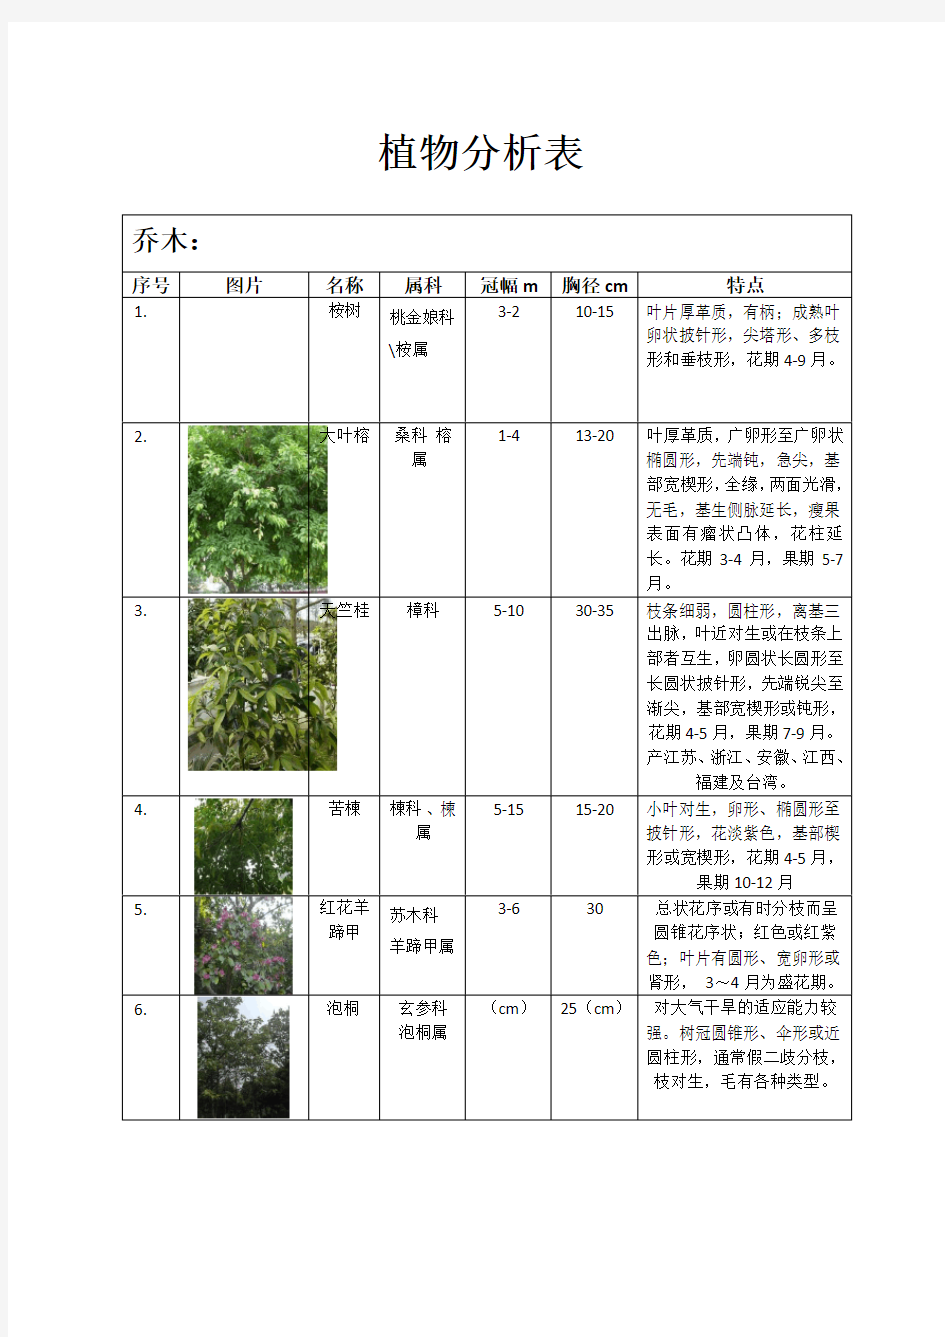 植物配置表